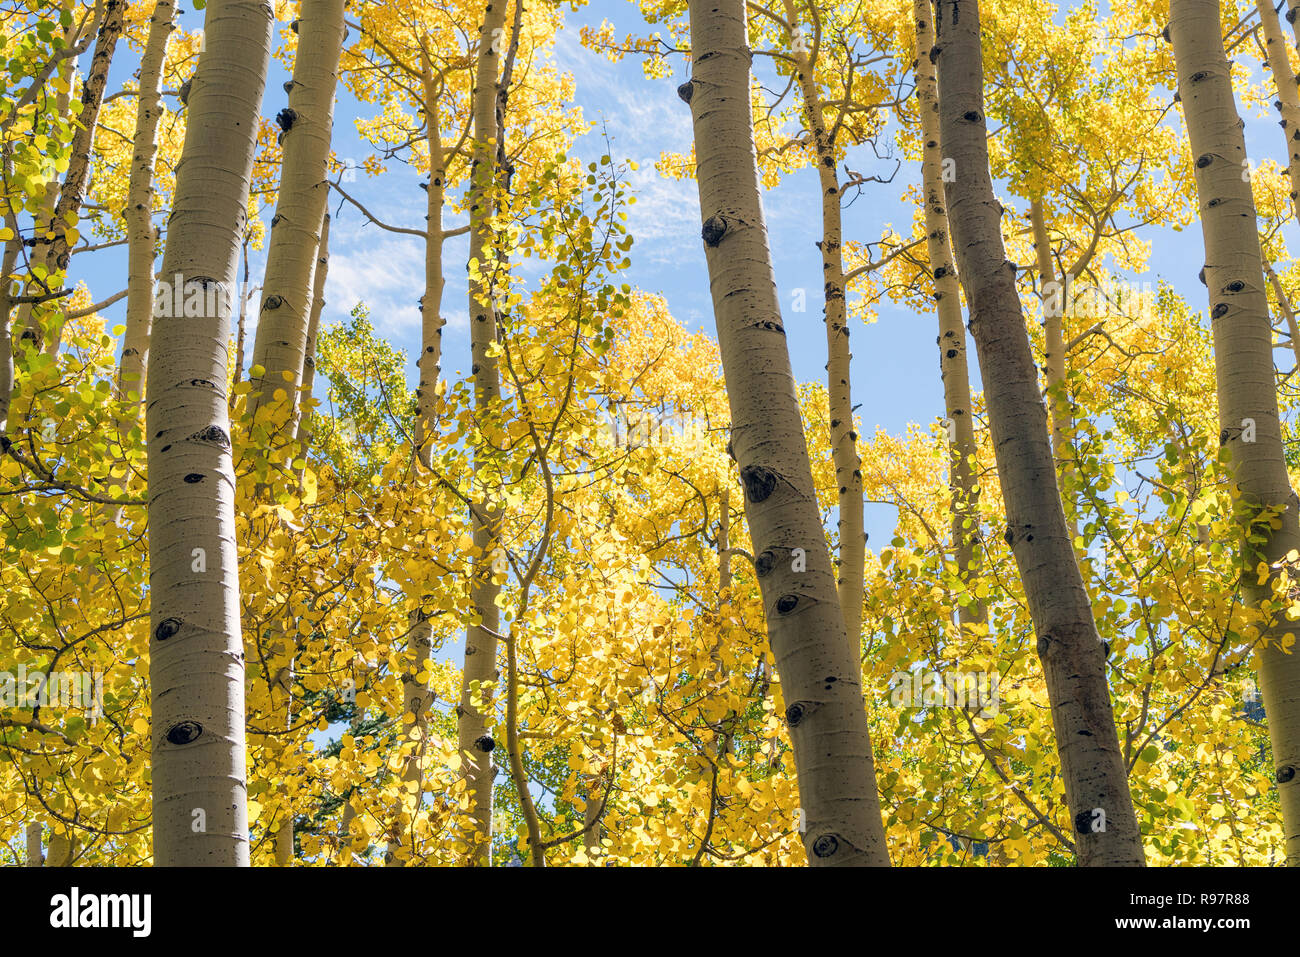 Aspen amarillo árboles con follaje de otoño, temporada de otoño árboles de cambio Foto de stock